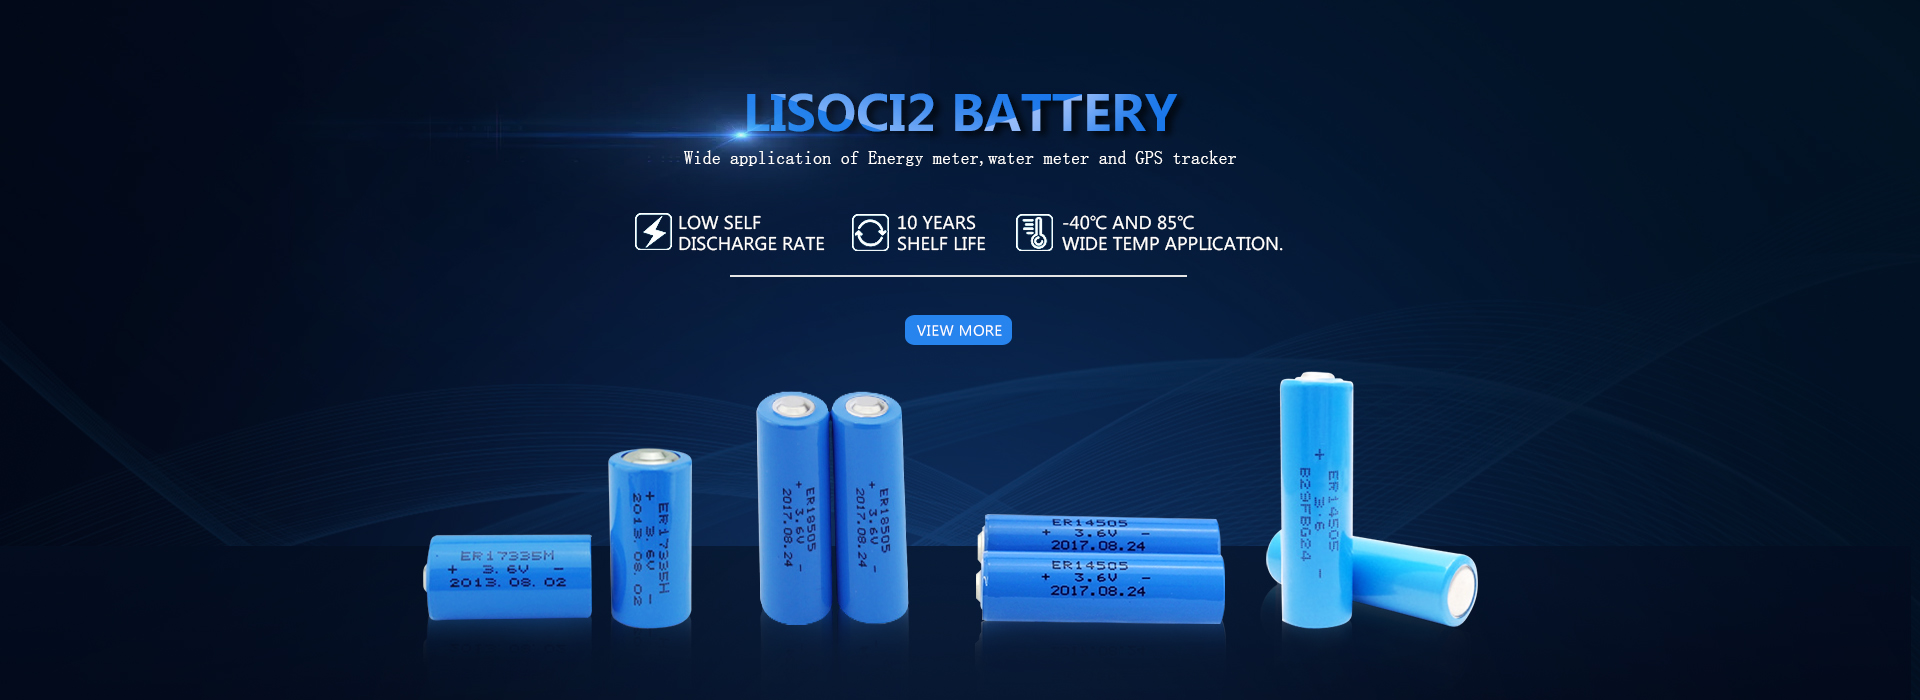 LiSoci2 Hersteller